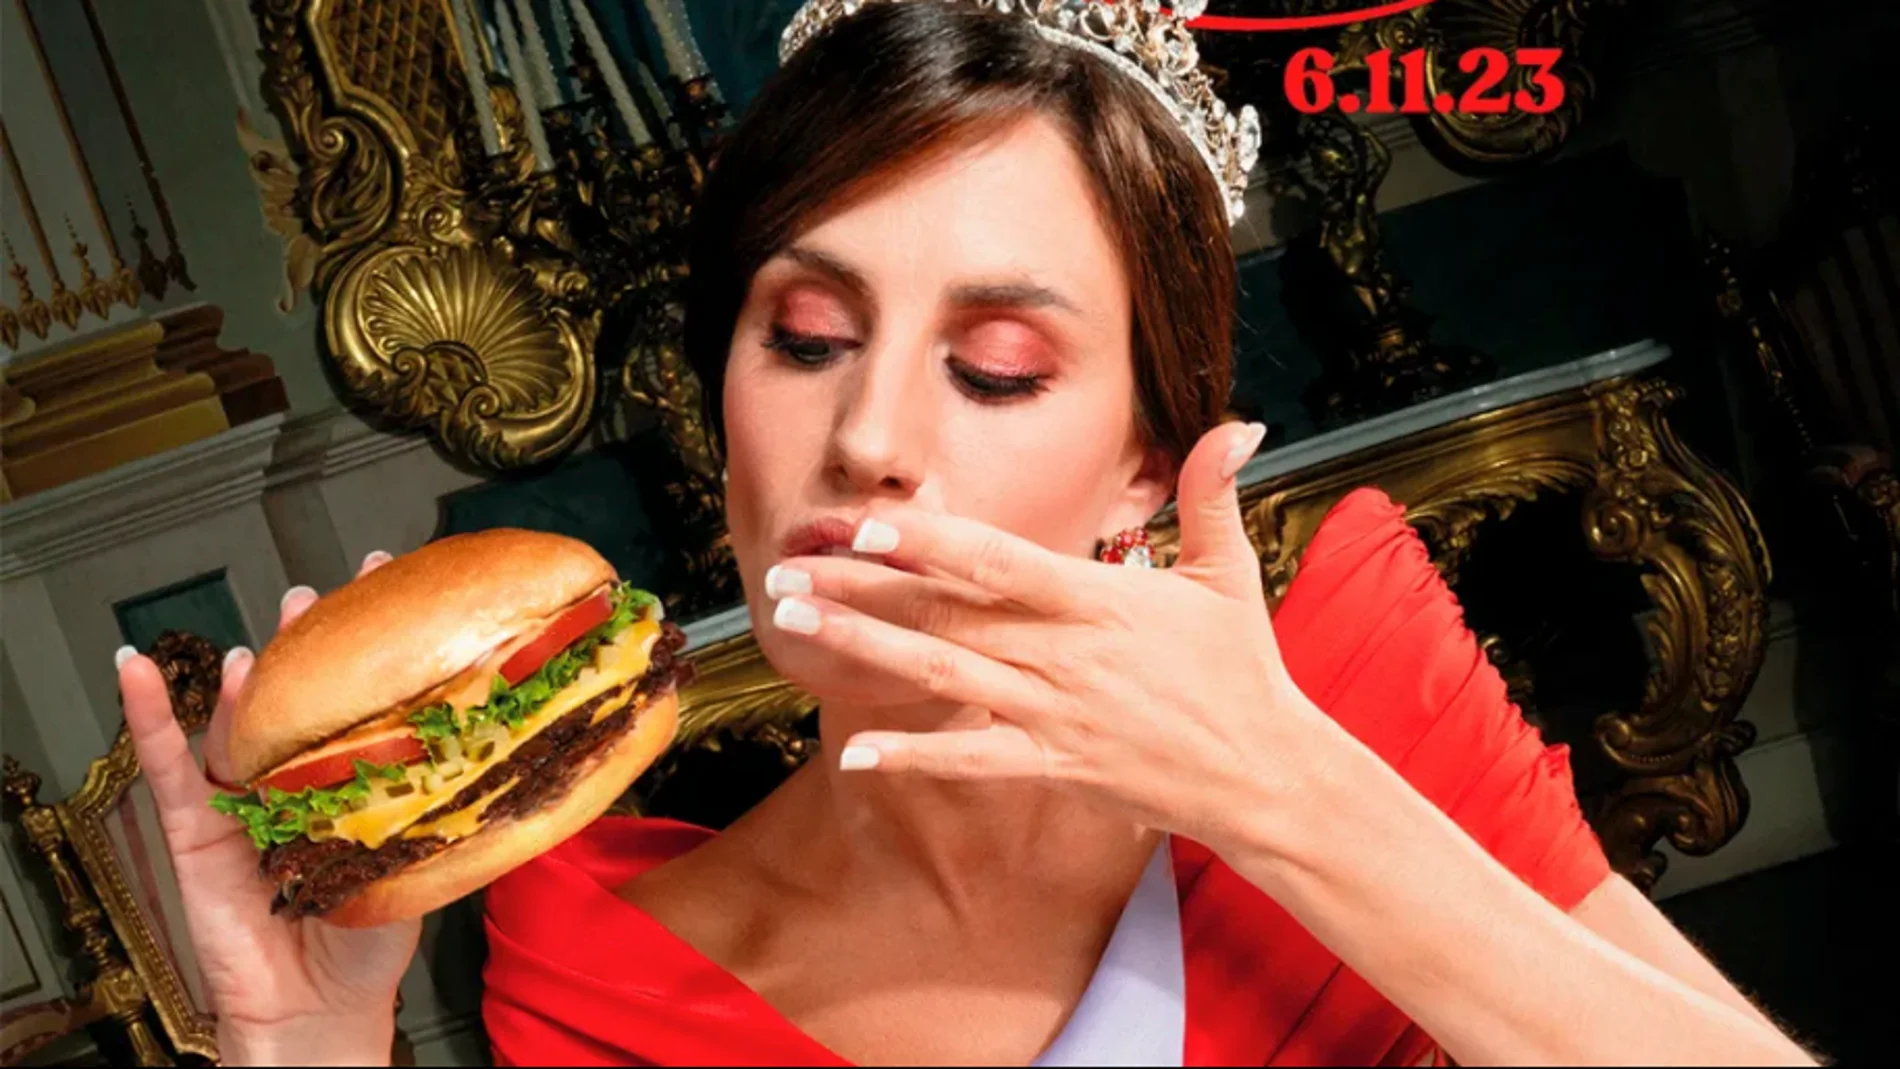 Una modelo que trata de parecerse a la Reina Letizia en la última campaña de una cadena de hamburguesas